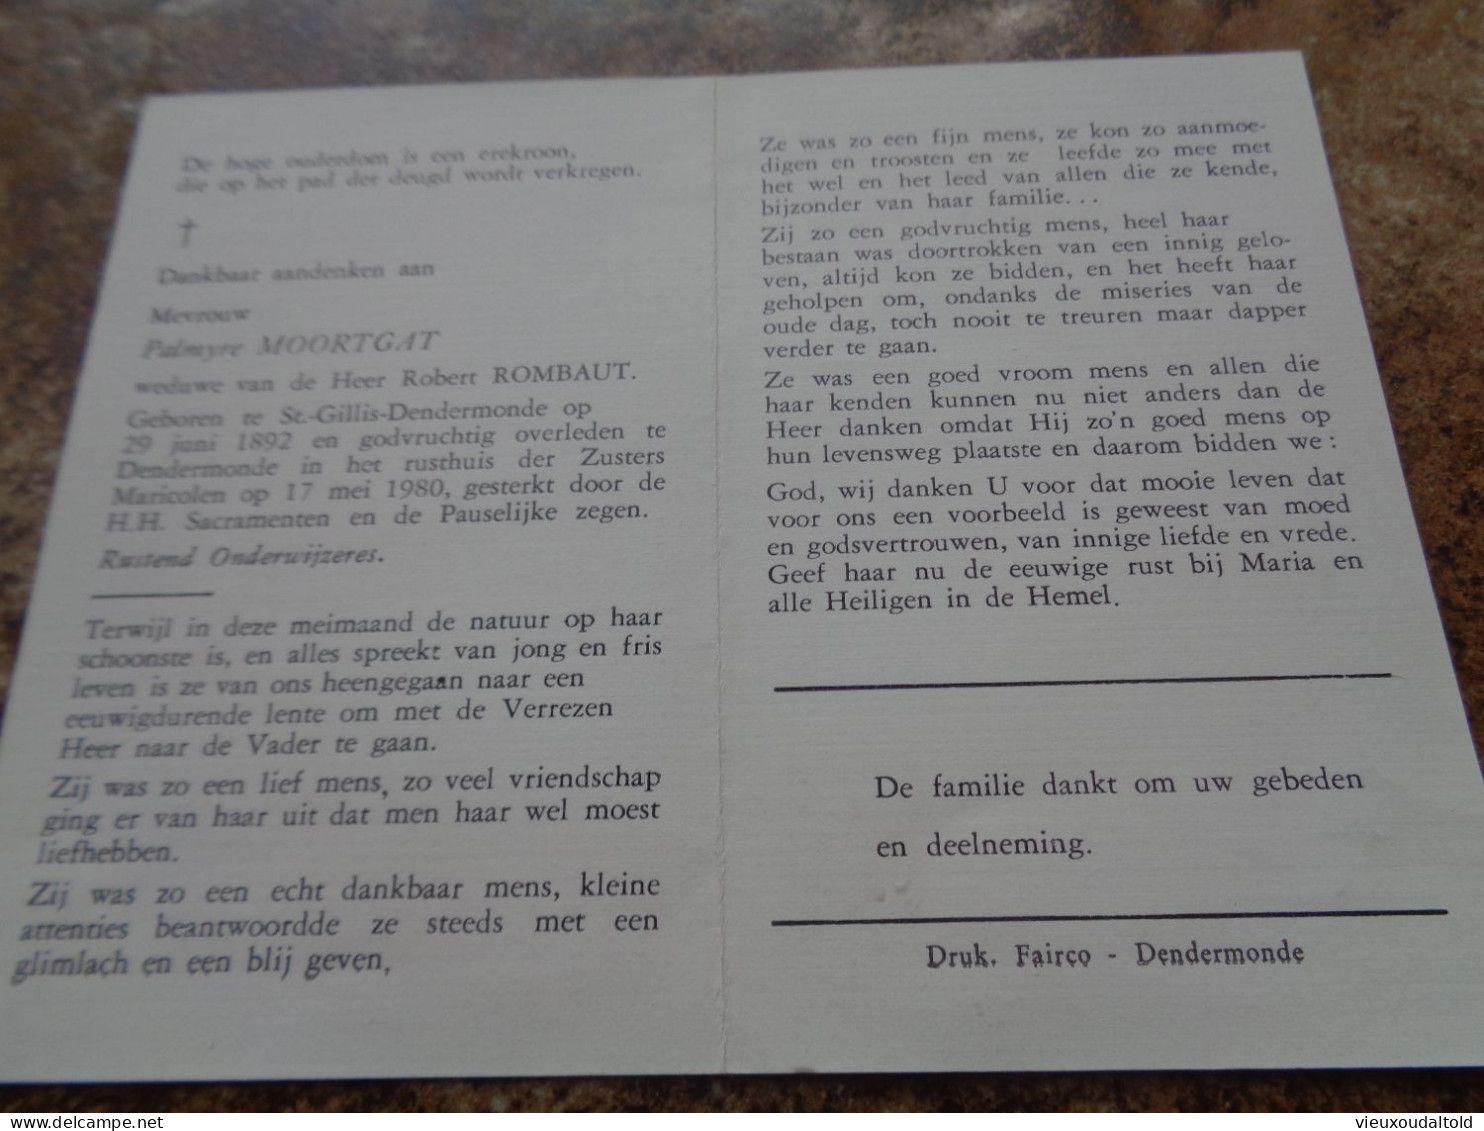 Doodsprentje/Bidprentje  Palmyre MOORTGAT   St Gillis-Dendermonde 1892-1980 Dendermonde  (Wwe Rogert ROMBAUT) - Religion & Esotericism